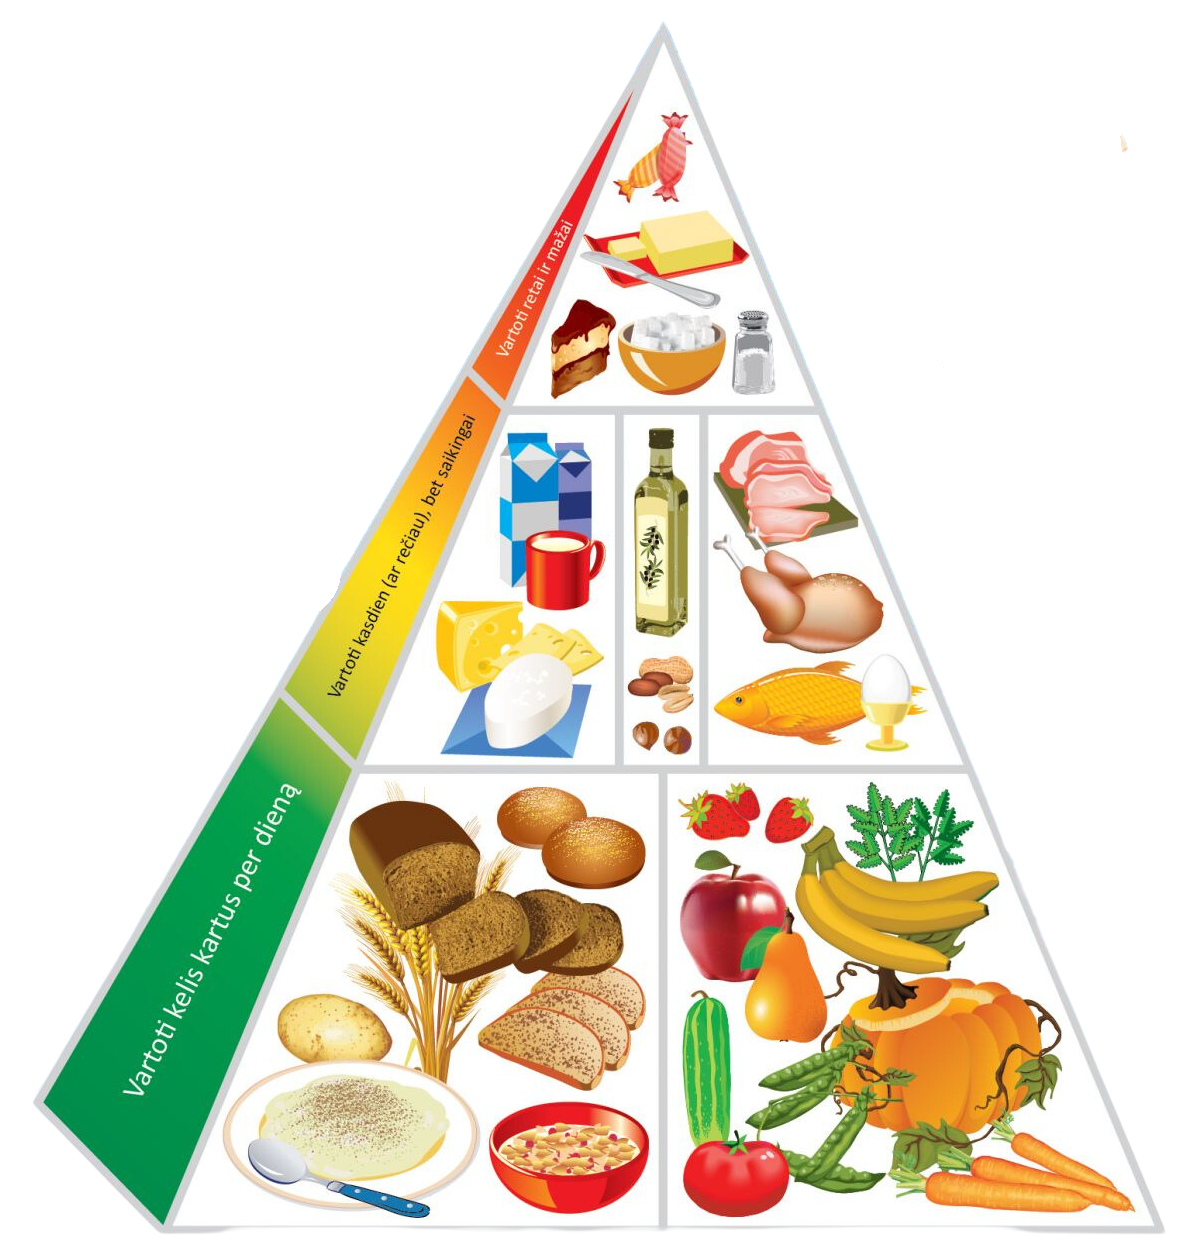 Sveikos mitybos piramidė